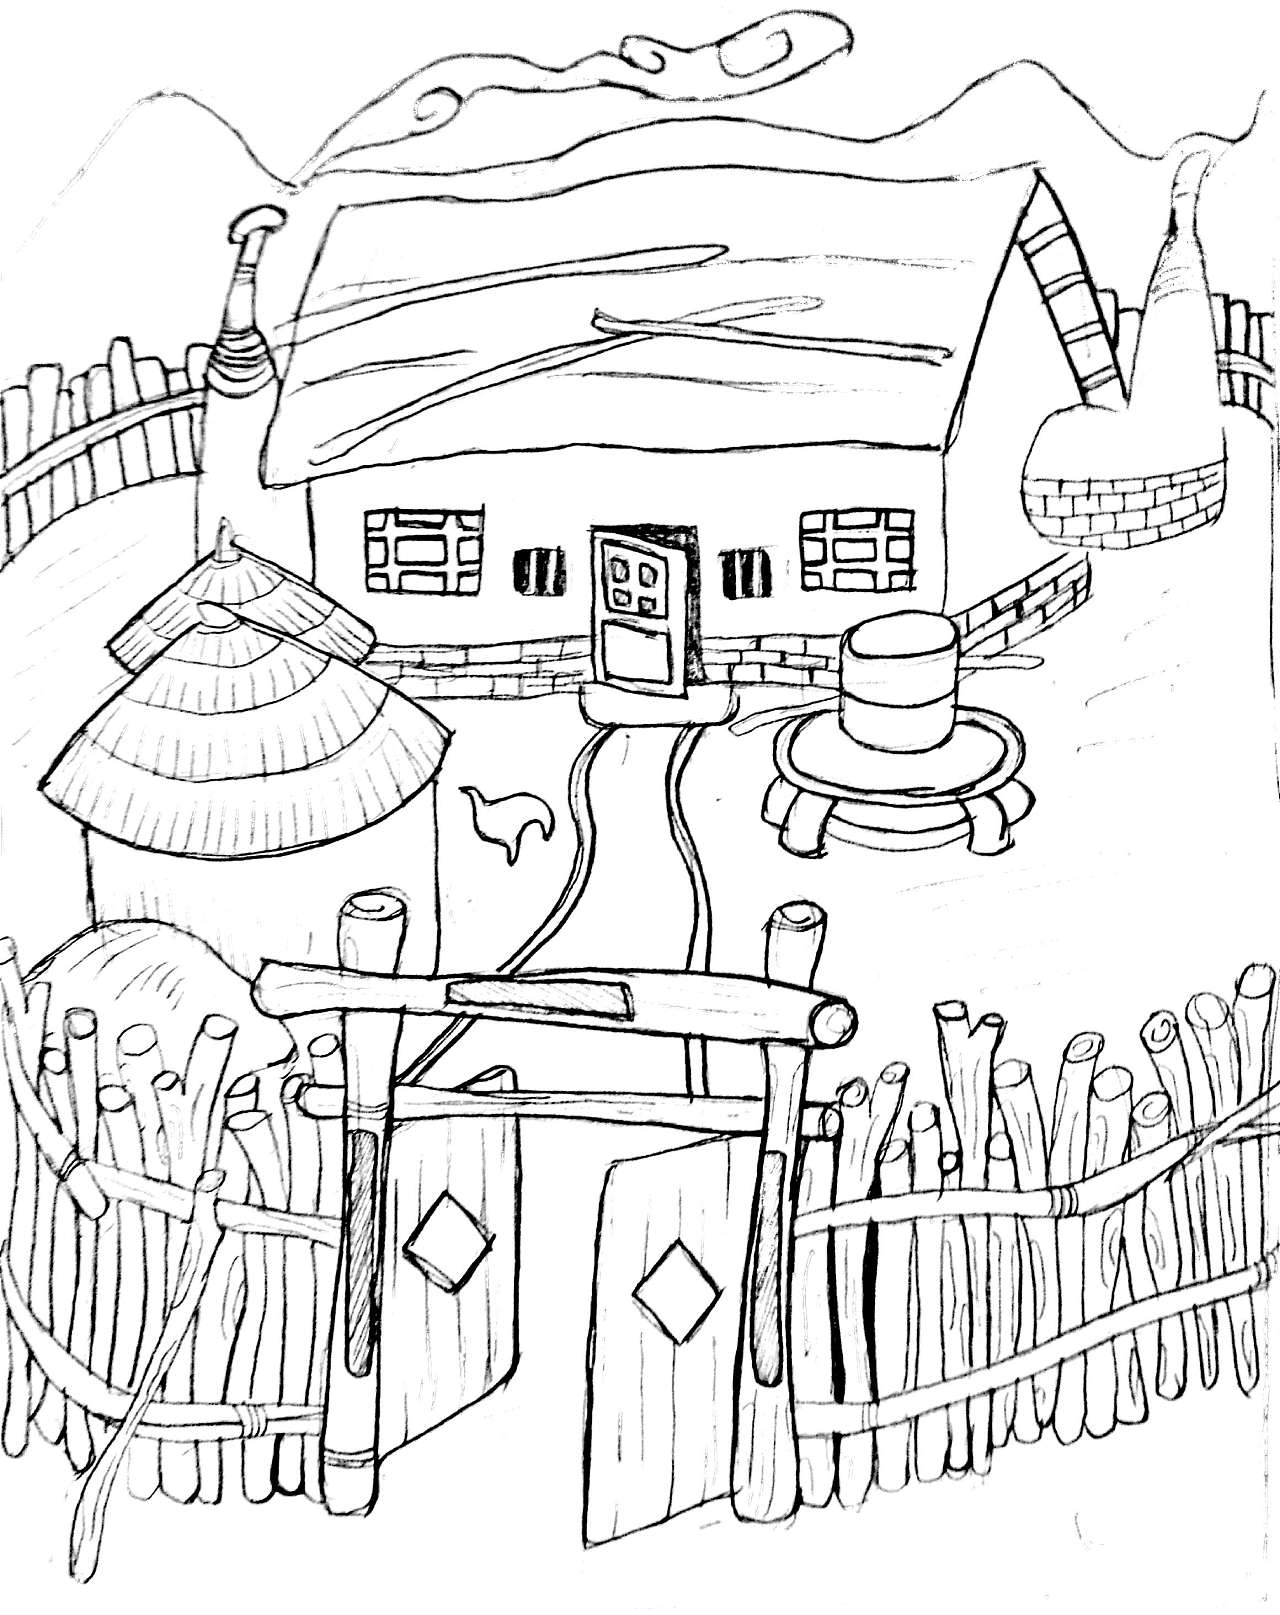 篱笆小屋的简笔画图片